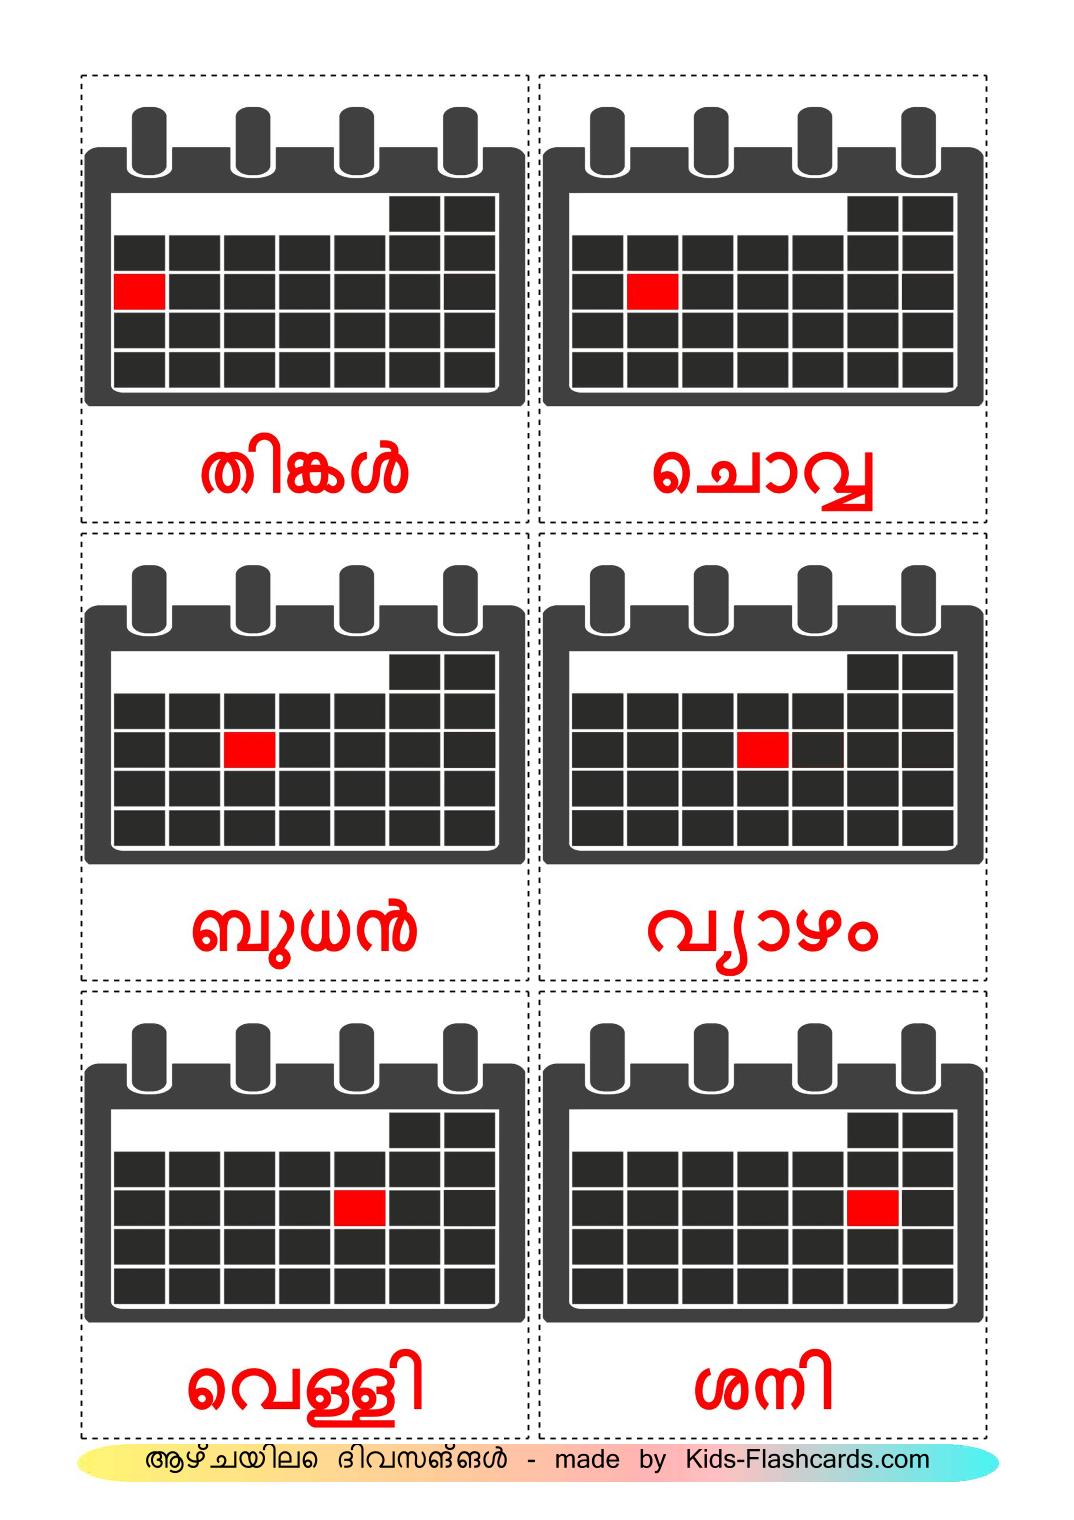 Días de la semana - 12 fichas de malayalam para imprimir gratis 